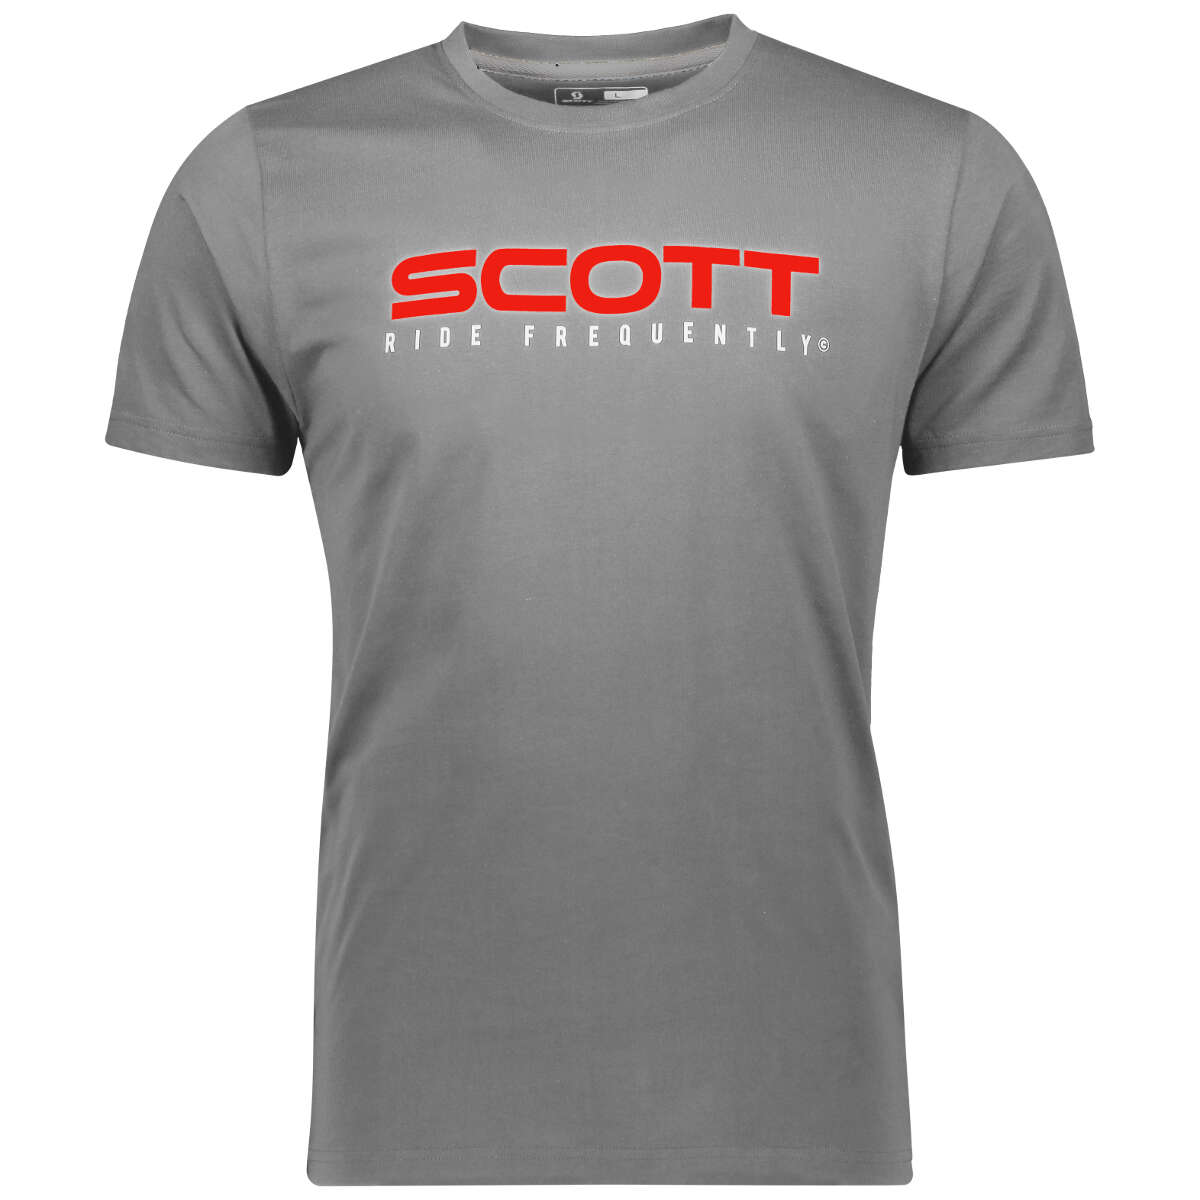 Scott T-Shirt 10 Heritage Dunkelgrau meliert